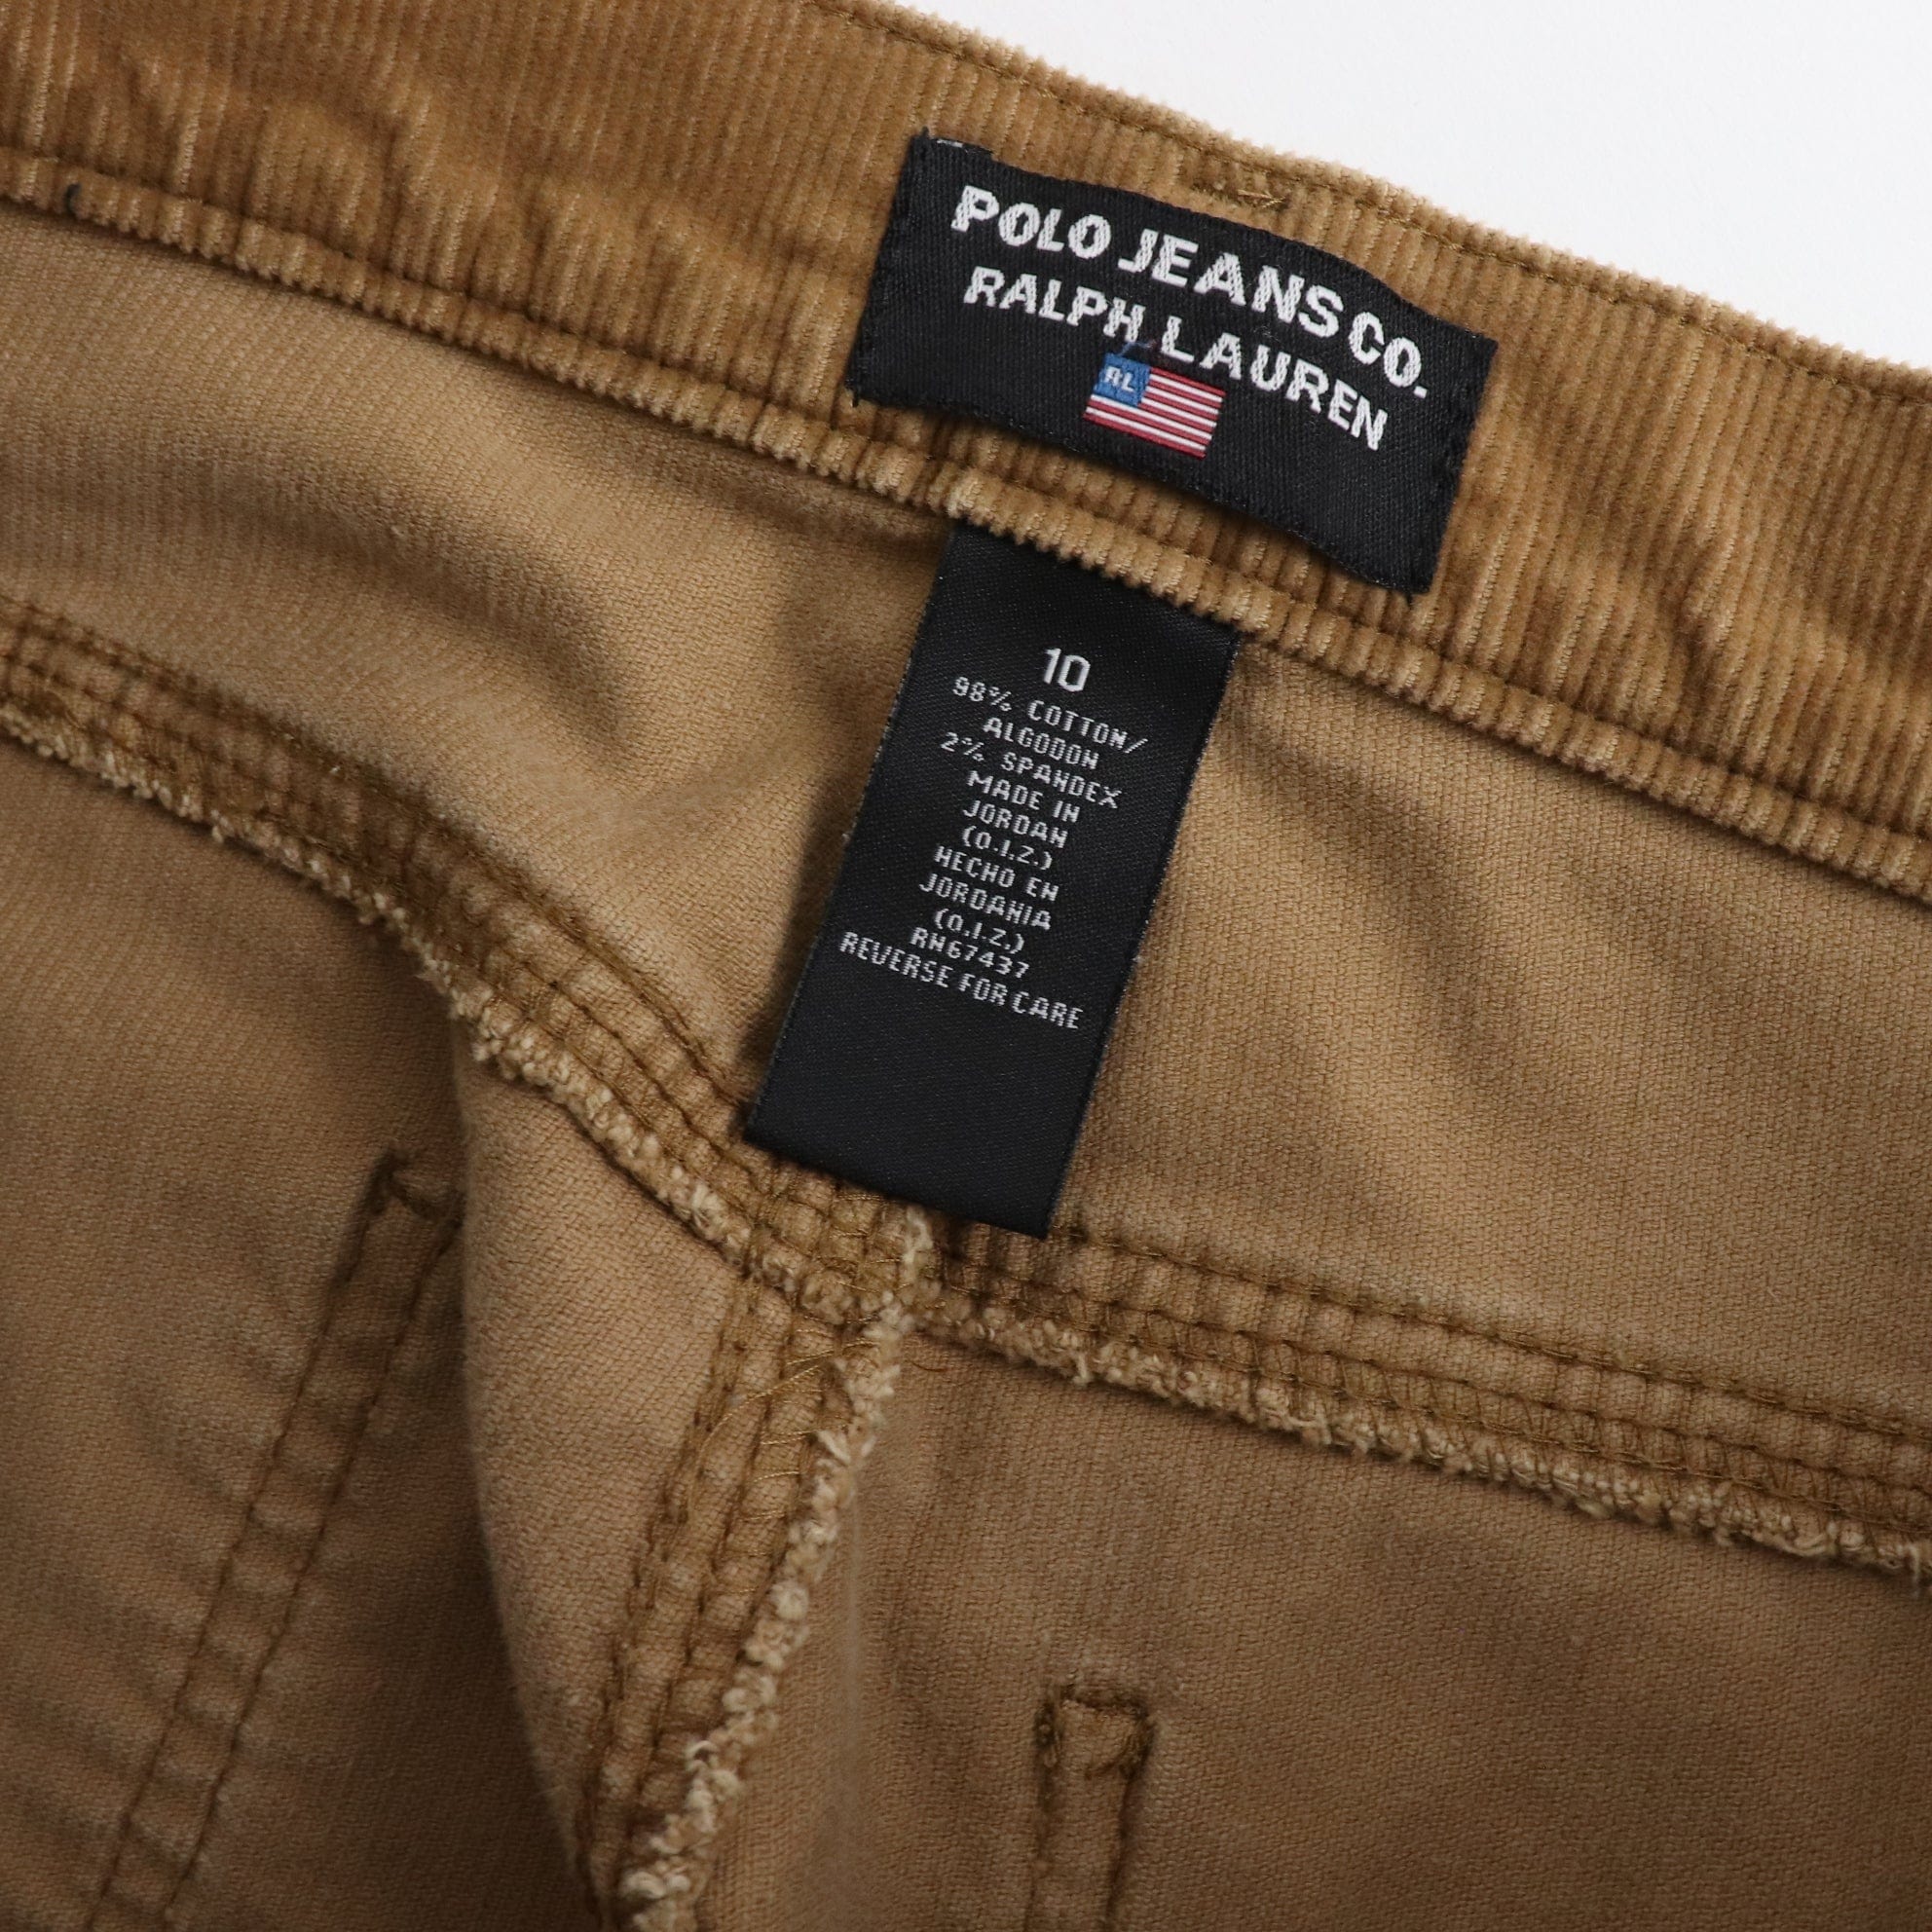 Vintage Polo Jeans Ralph Lauren Corduroy Flair Pants Women's Size 10 (